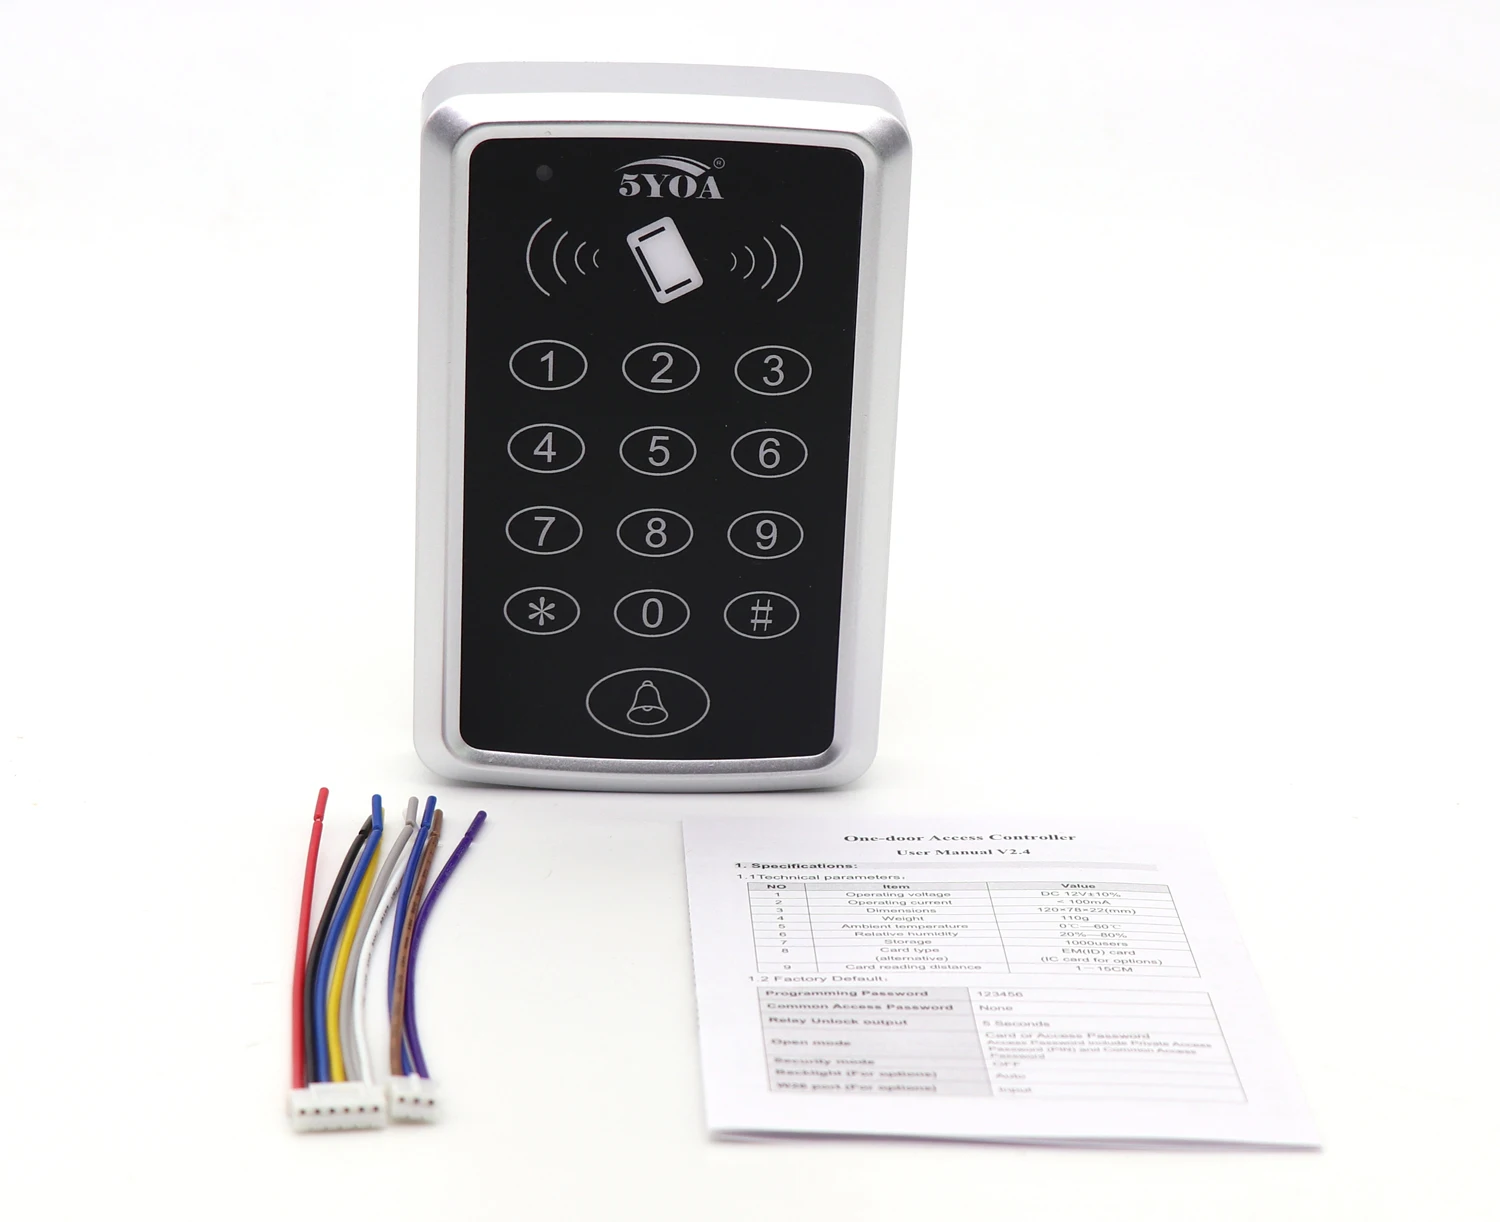 5YOA RFID система контроля доступа устройство машина карты Keytab близость дверной замок тег EM ID Клавиша клавиатуры Fobs управление Лер